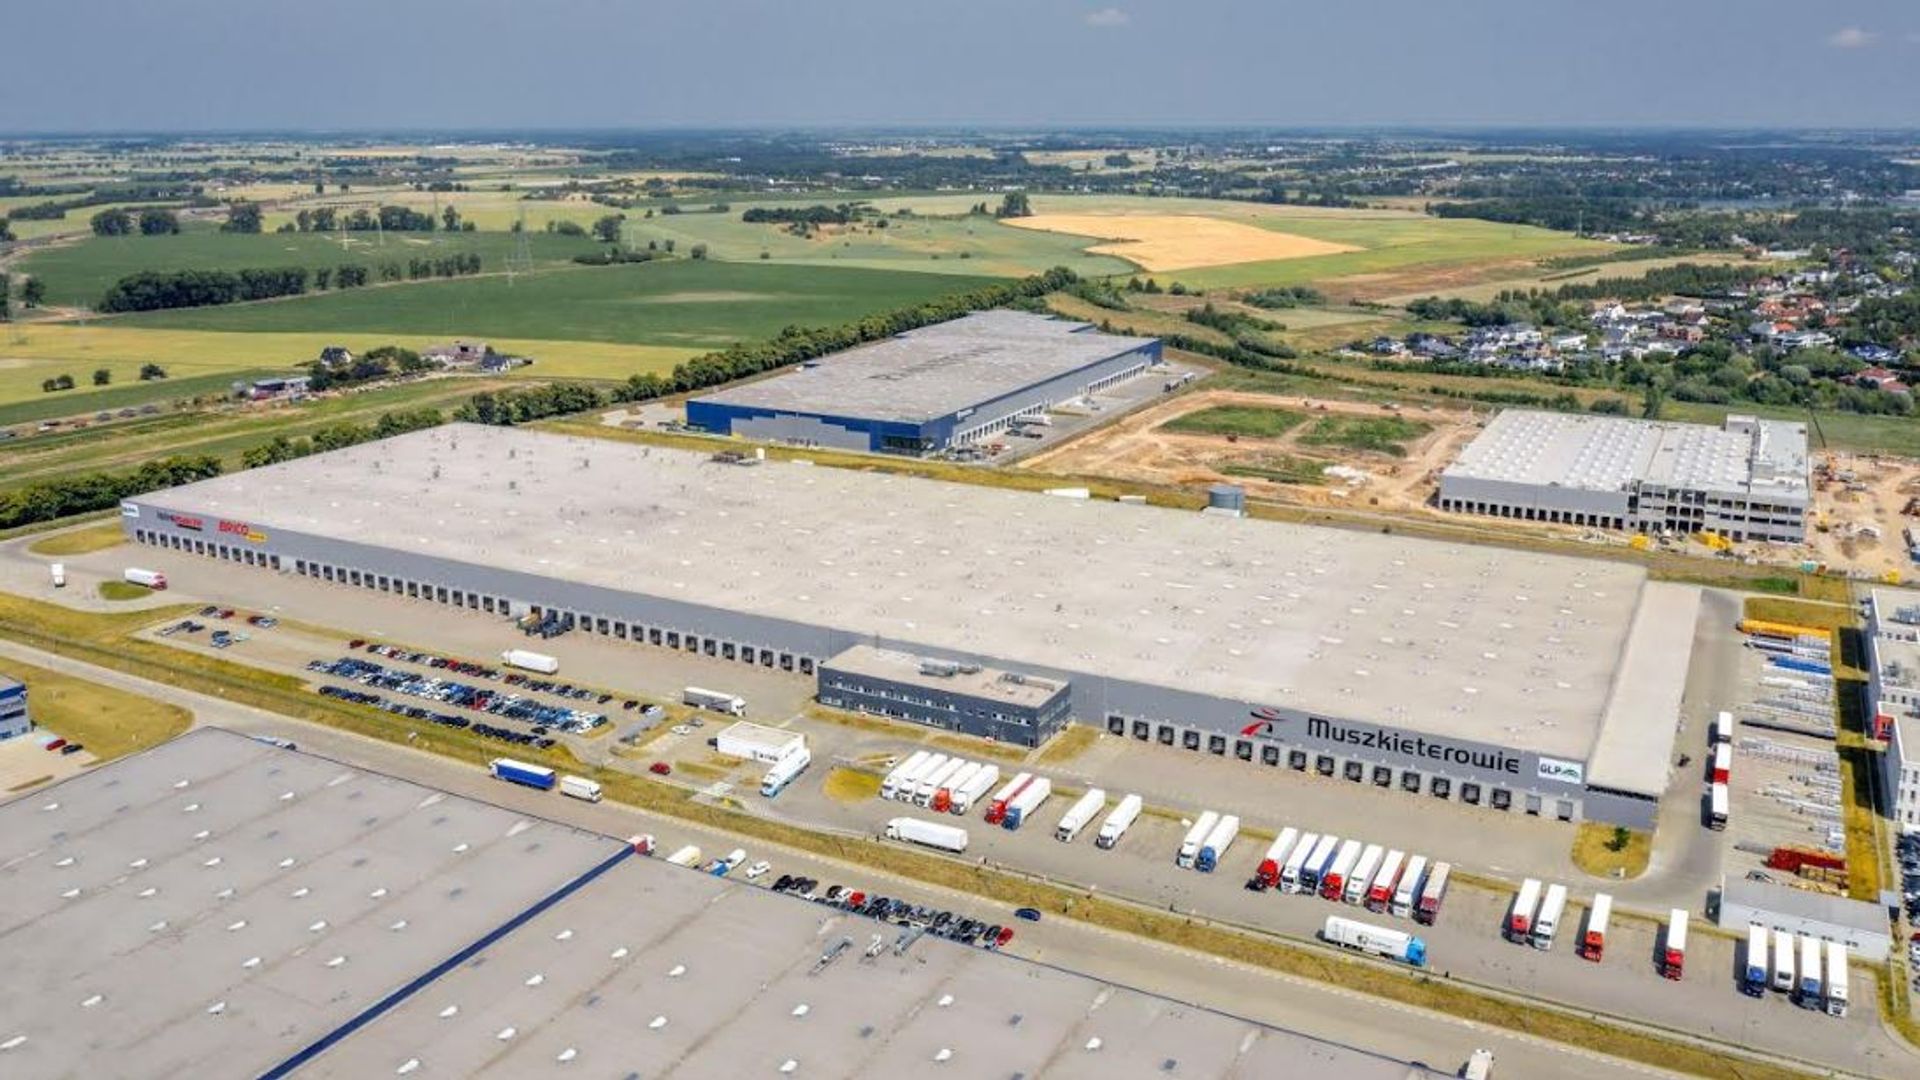 Grupa Muszkieterów zostaje na dłużej w GLP Poznań I Logistics Centre